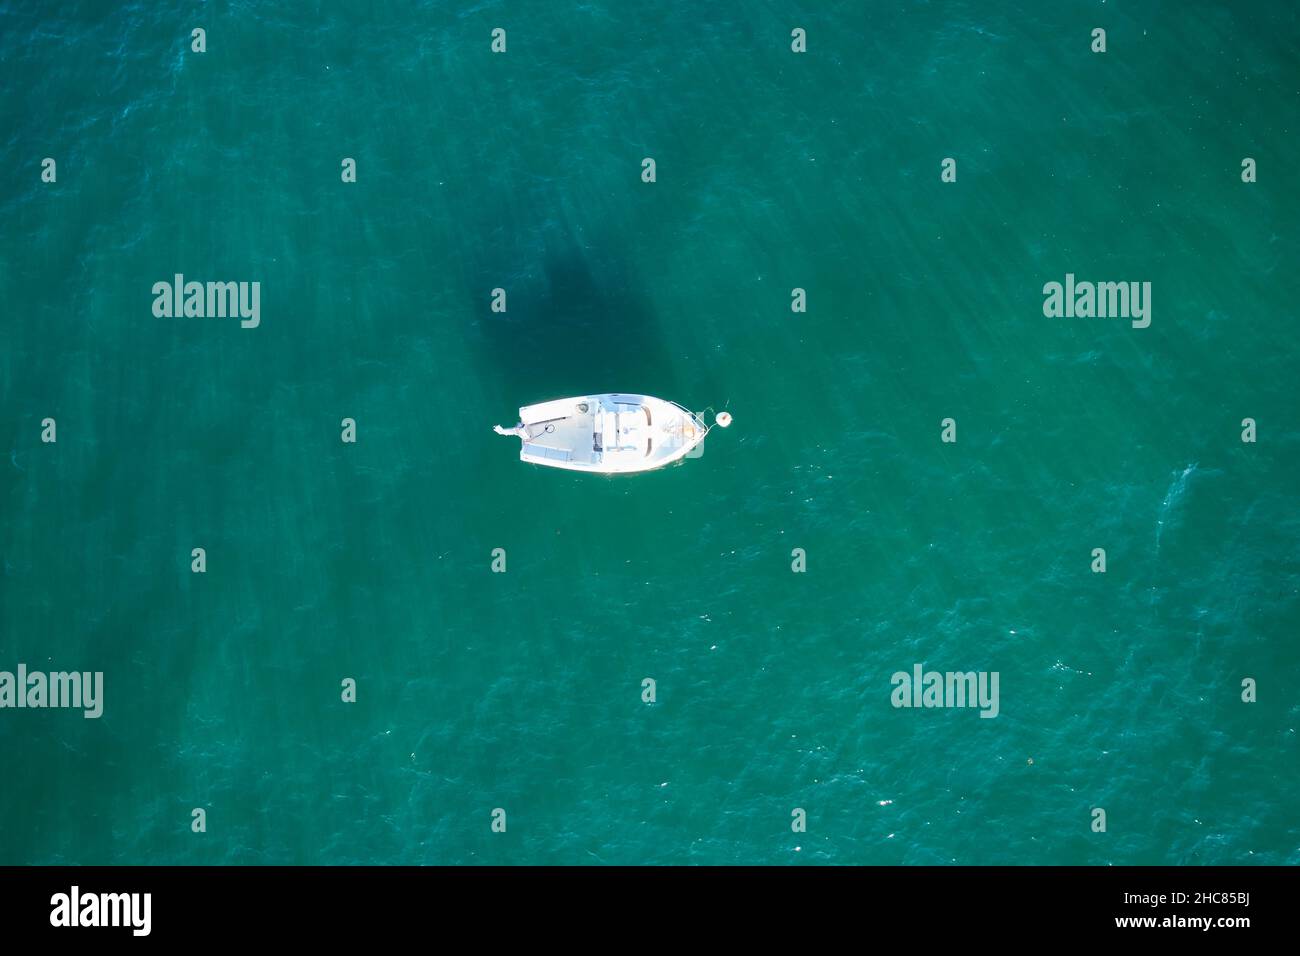 Barco de pesca vacío desde arriba en el atlántico. Vista aérea de un pequeño buque blanco sobre agua verde azul. Objeto aislado. Foto de stock